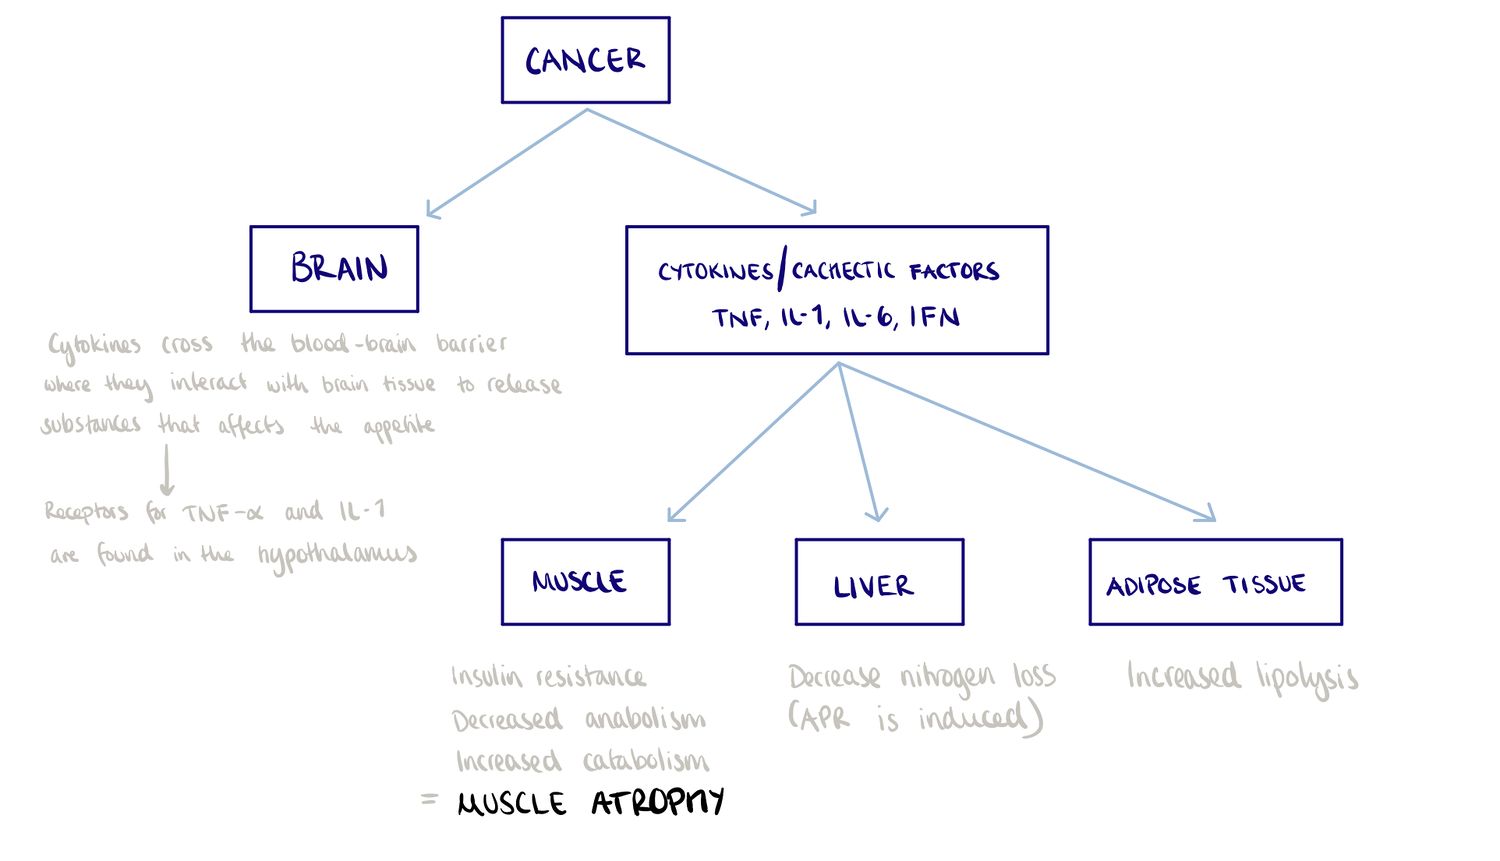 Cancer cachexia 1.jpg